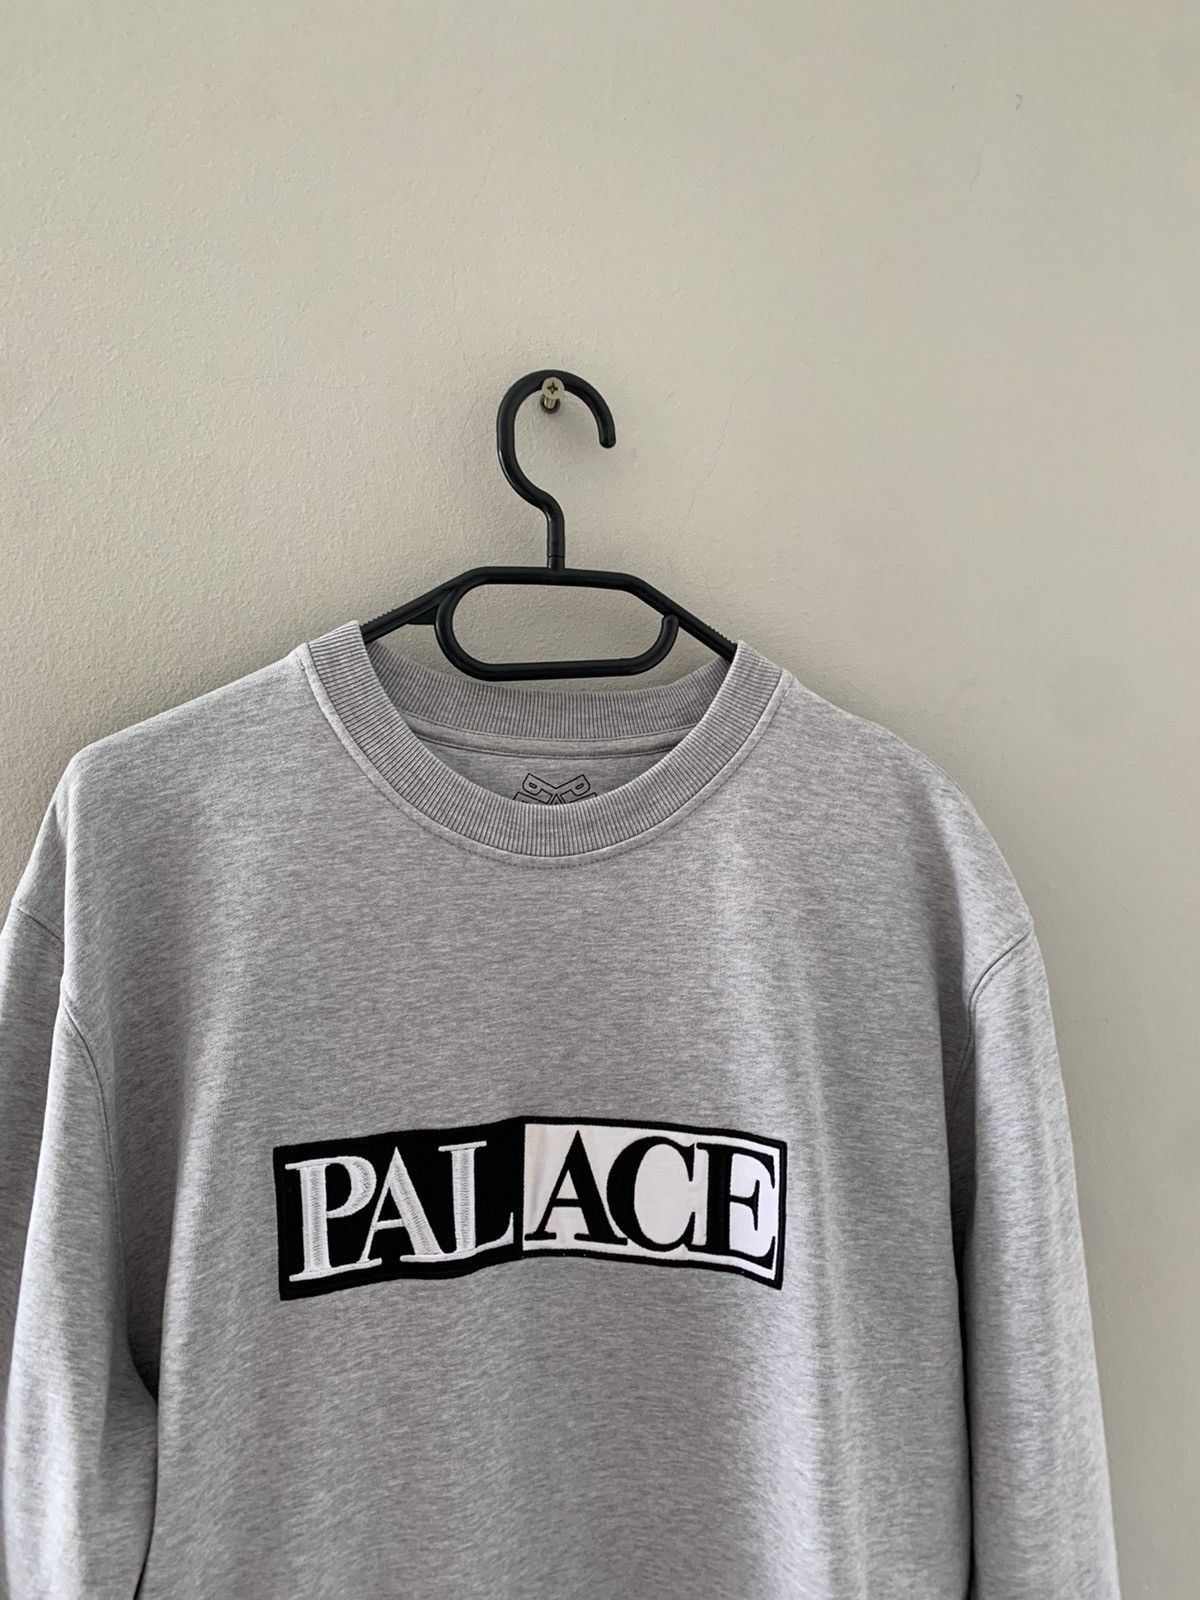 Palace Palace Sweatshirt Size US S / EU 44-46 / 1 - 3 Thumbnail